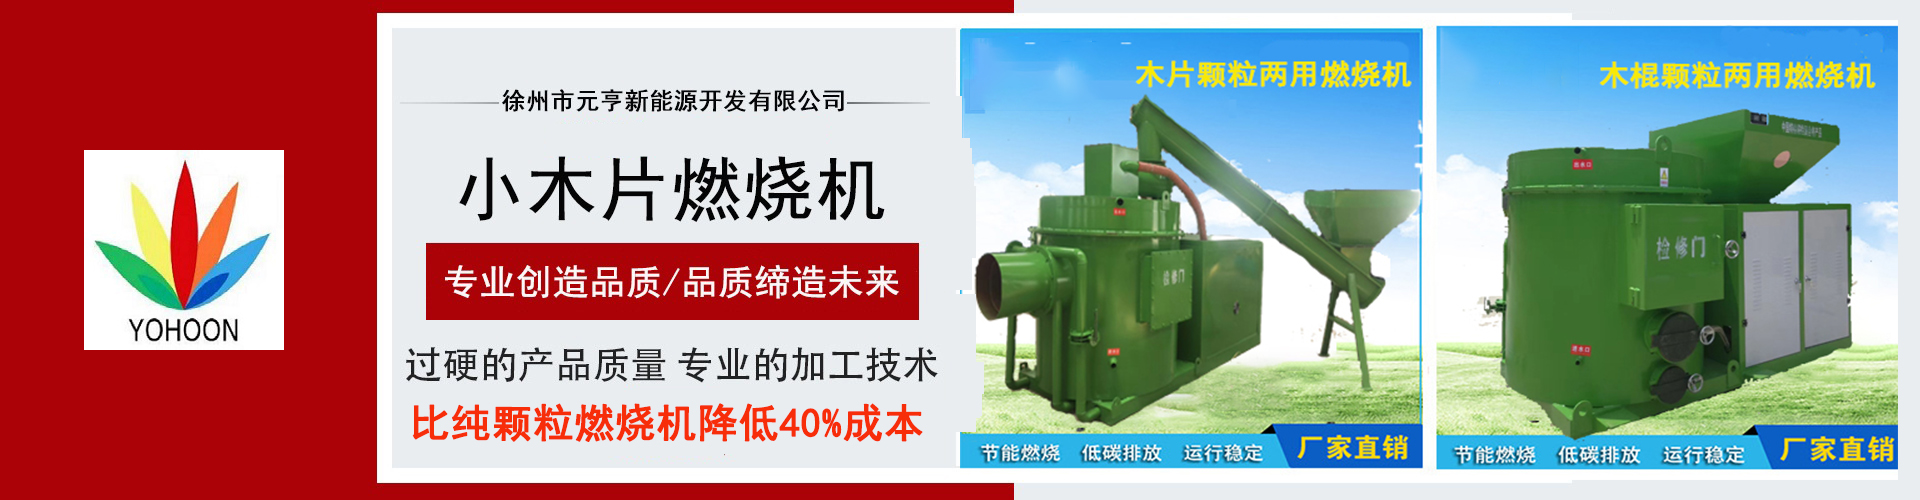 聚享游徐州市元亨新能源开发有限公司简介(图1)